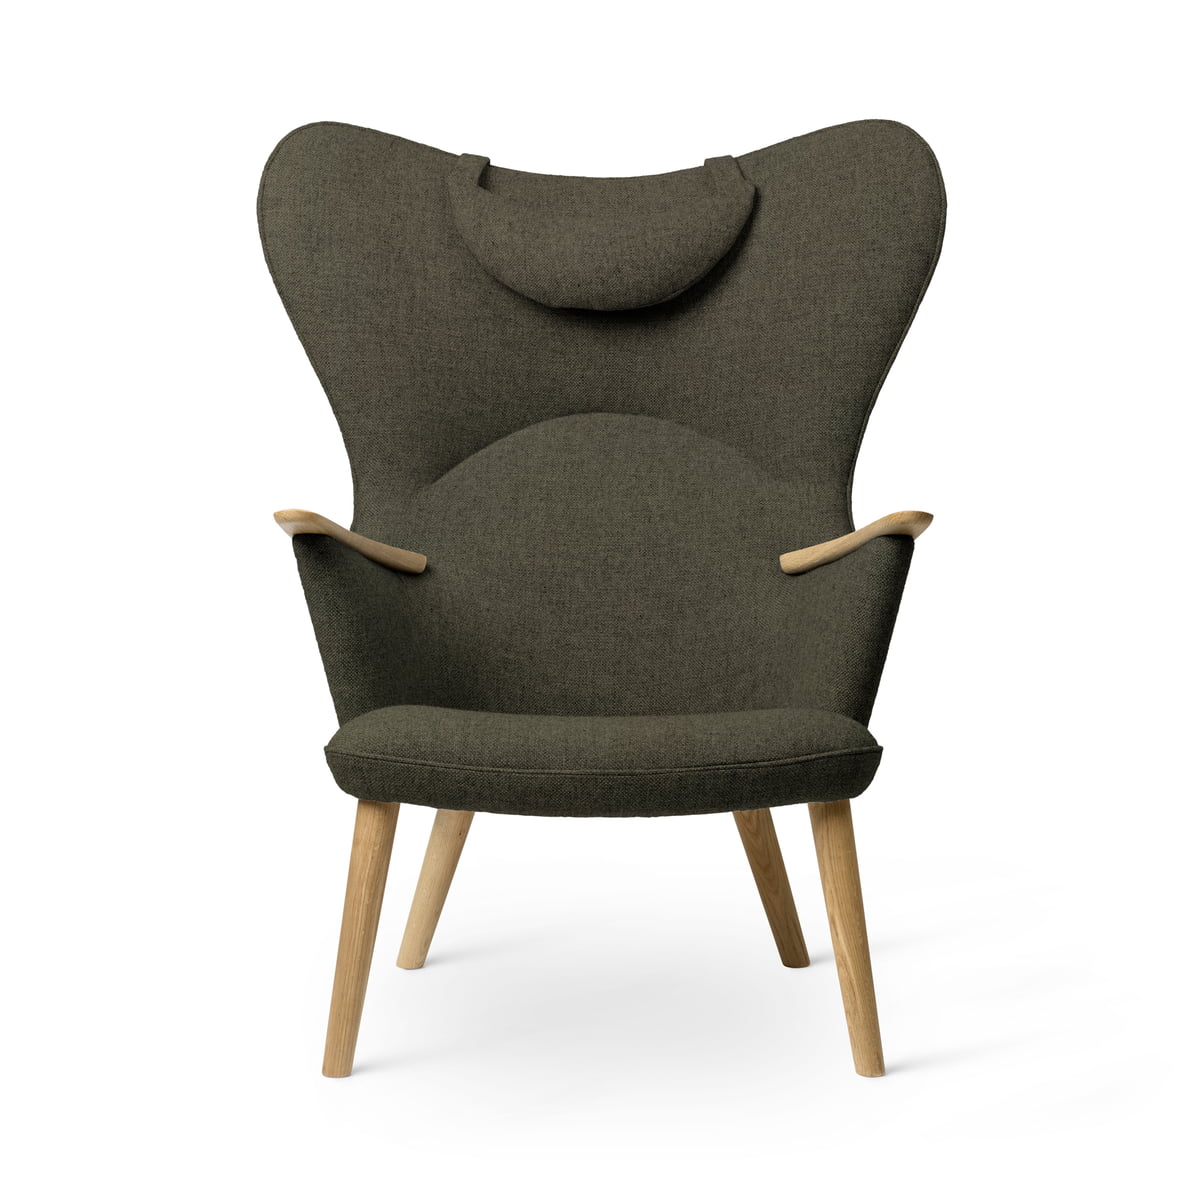 Carl Hansen - CH78 Mama Bear Lounge Chair, Eiche geölt / Fiord 0961